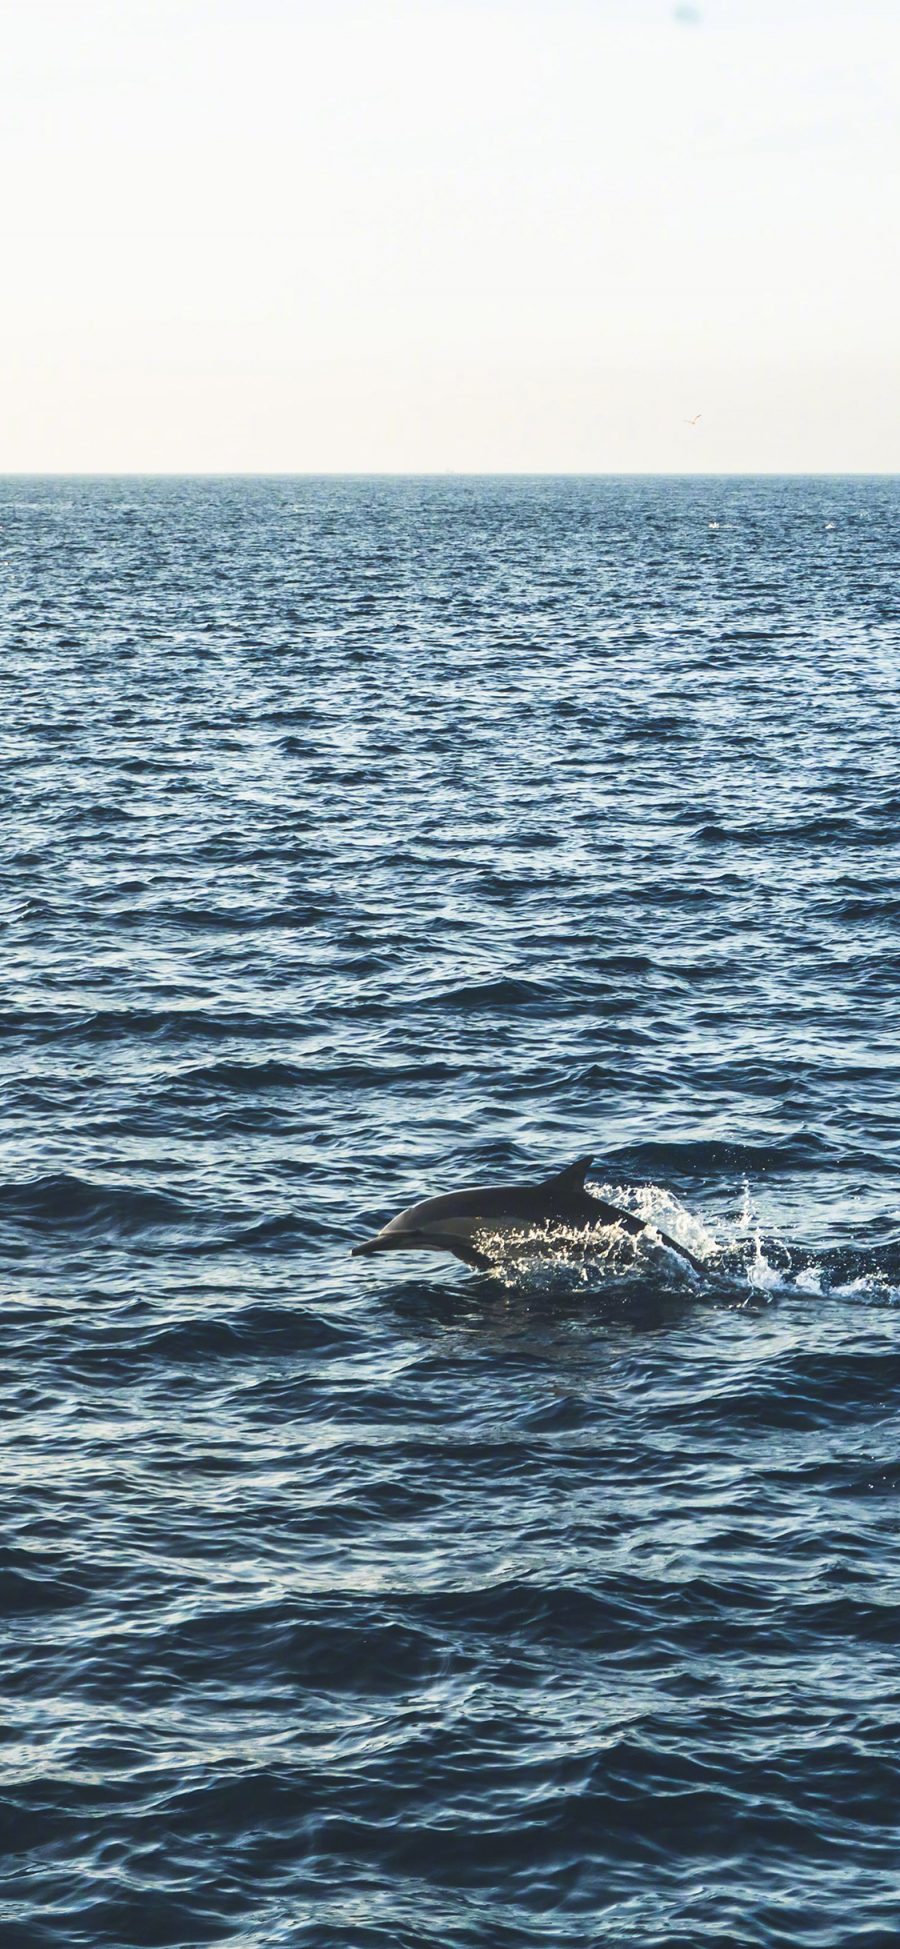 [2436×1125]海豚 海洋生物 跳跃 大海 海面 苹果手机壁纸图片